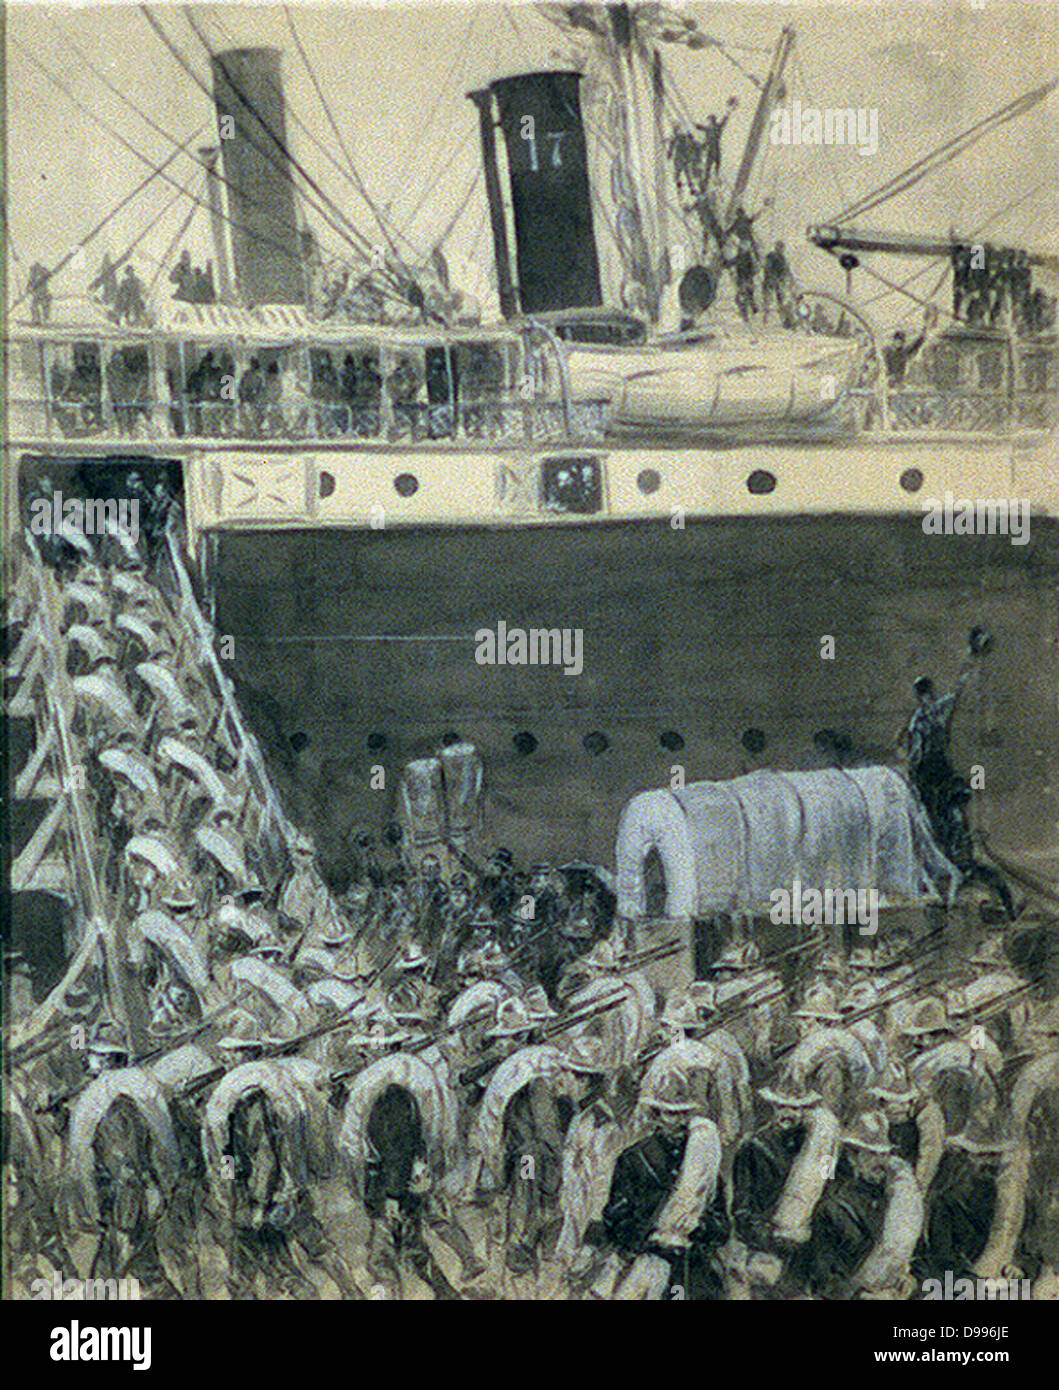 L'embarquement des troupes américaines à vapeur de transport, guerre hispano-américaine. Dessin à la plume et encre, lavis, crayon blanc, Chinois.[1898] Banque D'Images